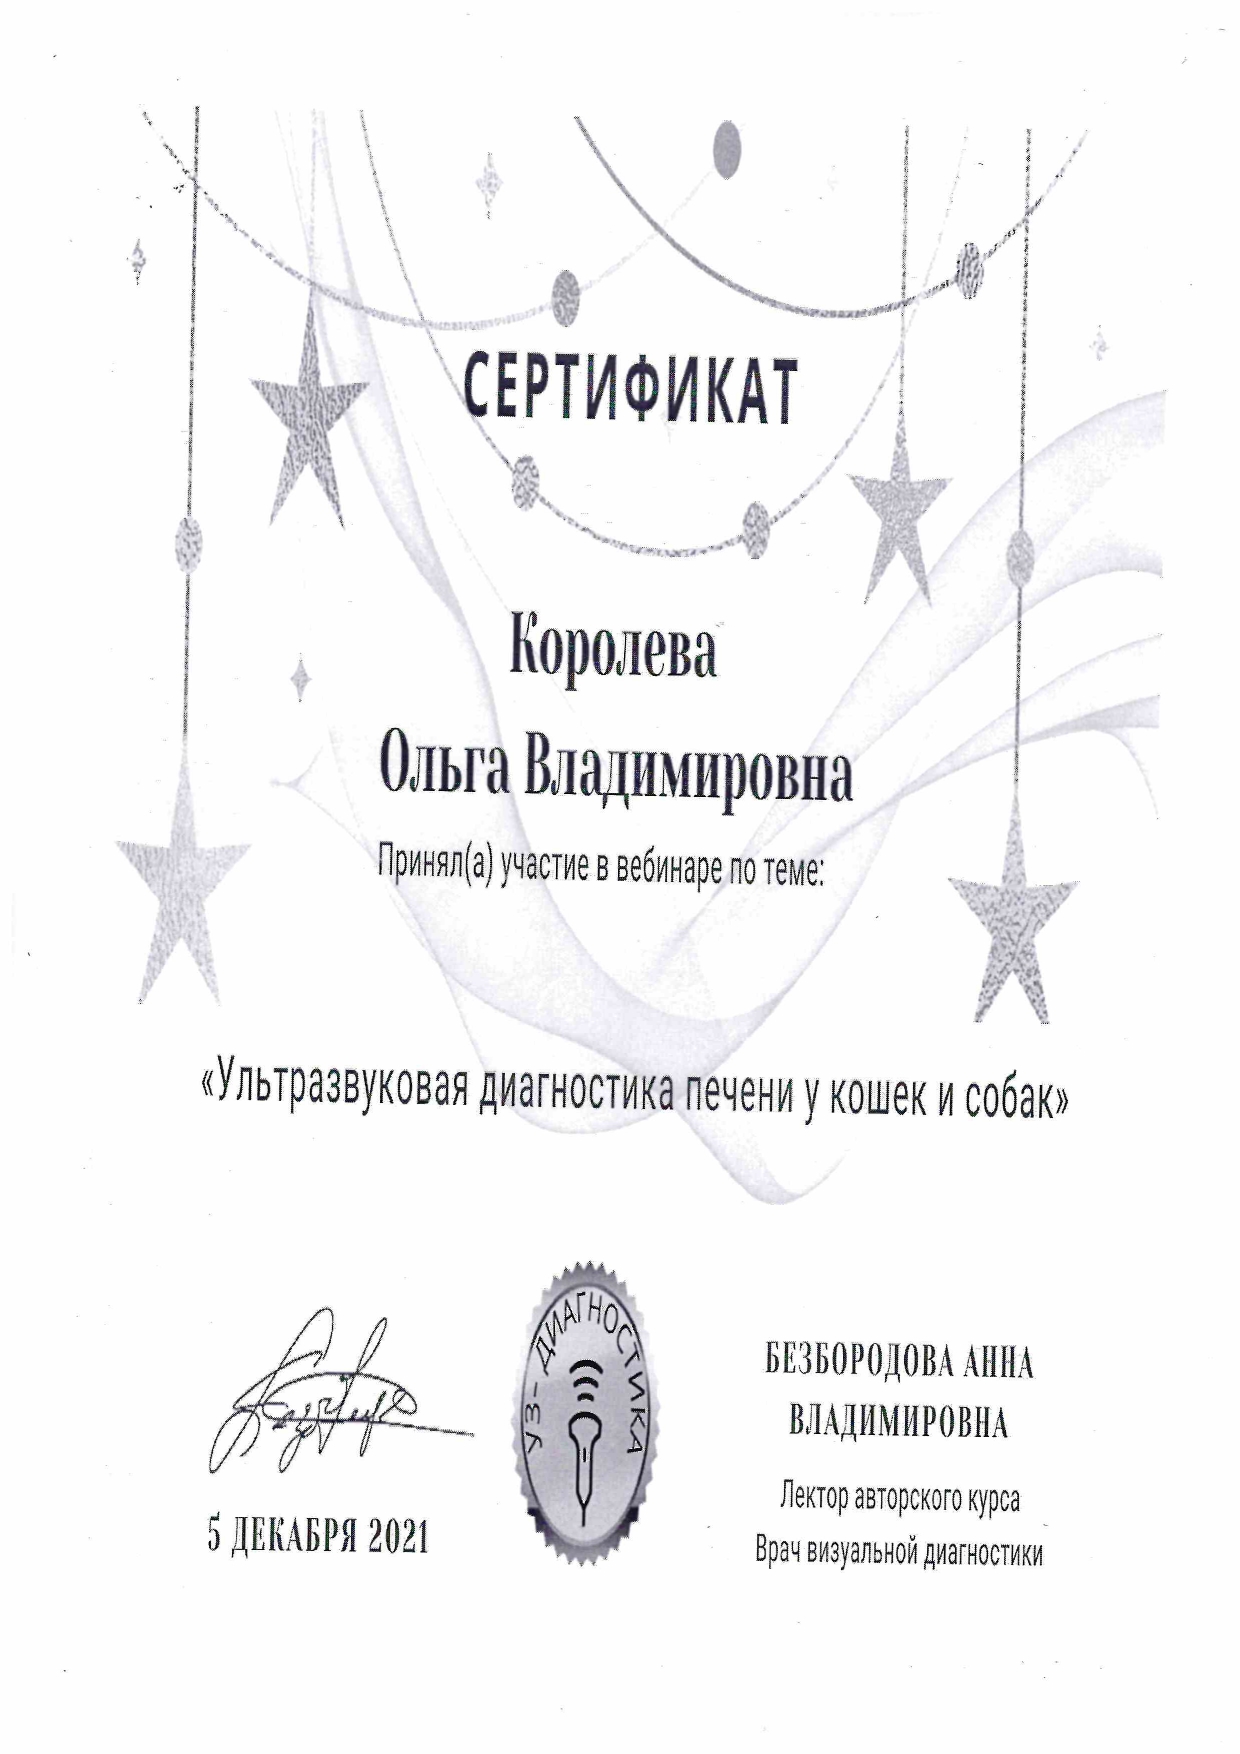 Сертификат УЗИ печени у кошек и собак